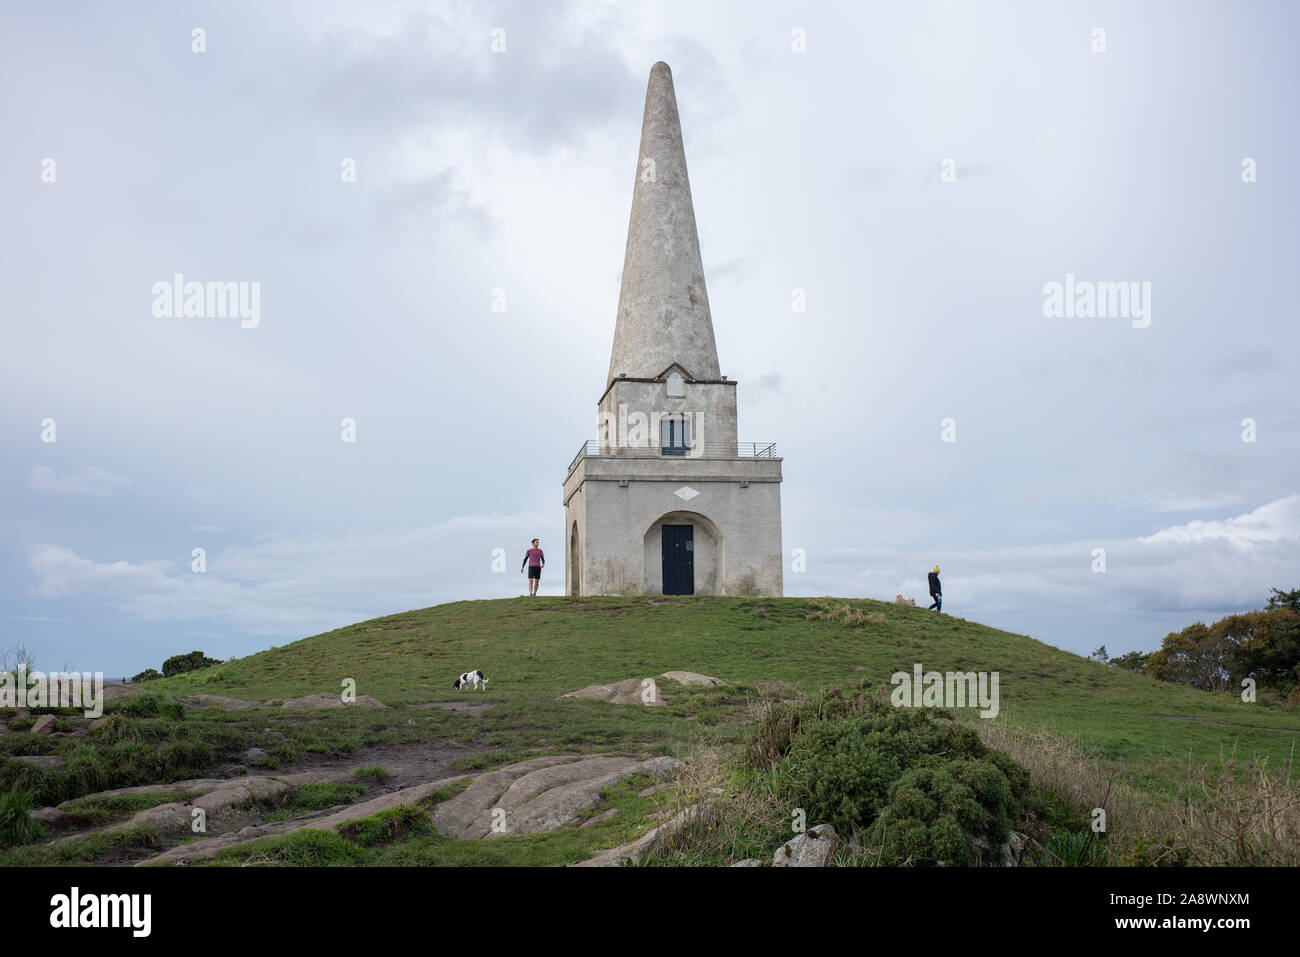 Irland küstenstadt -Fotos und -Bildmaterial in hoher Auflösung – Alamy